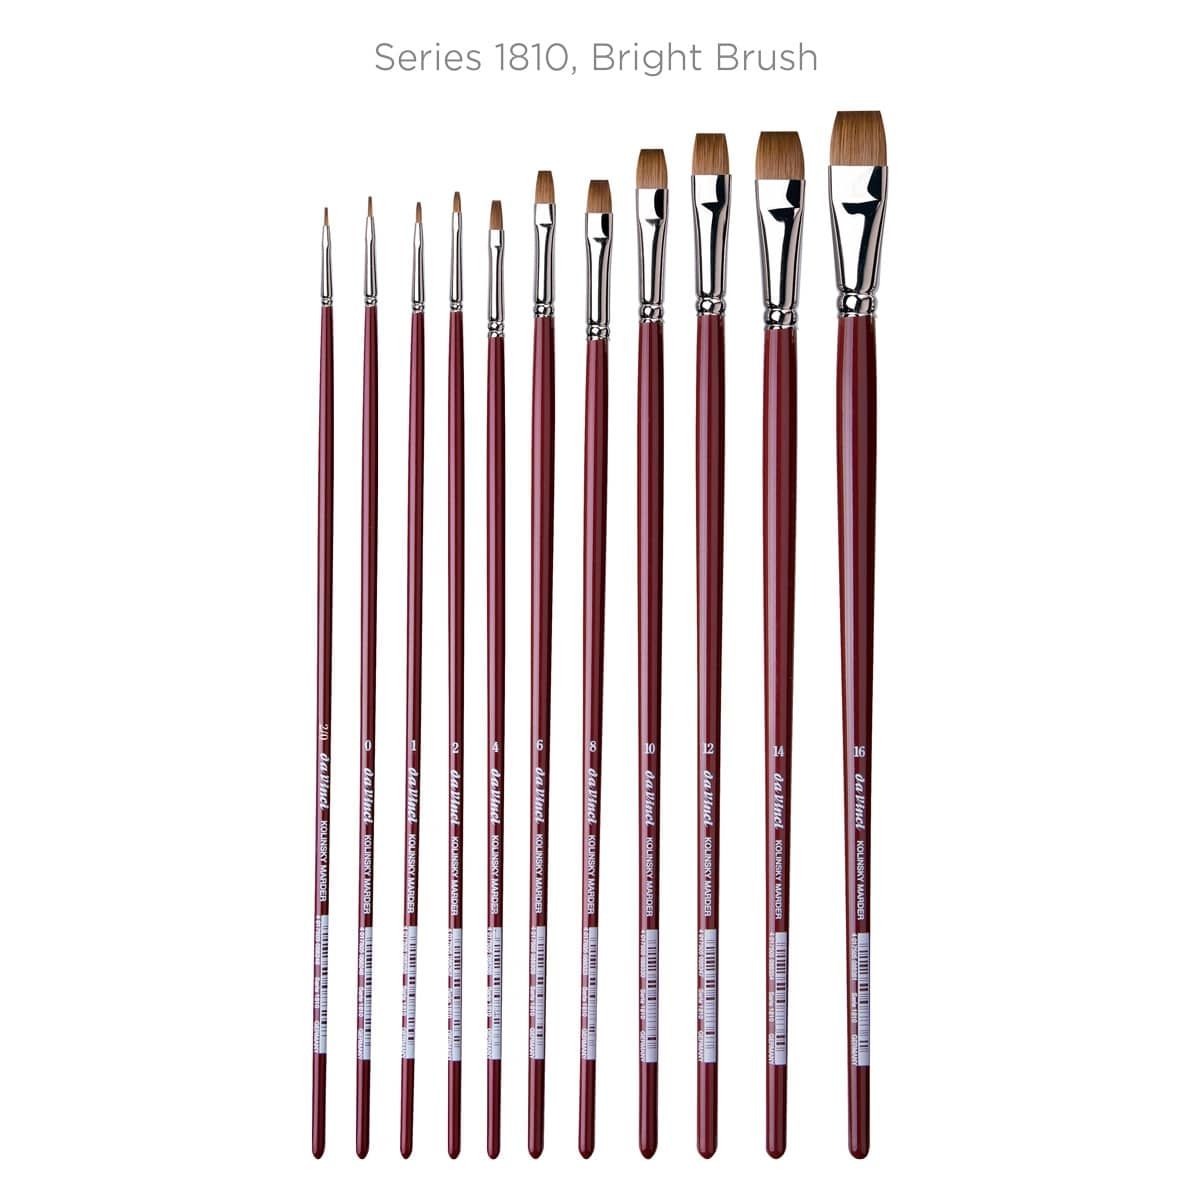 Series 1810, Bright Brush